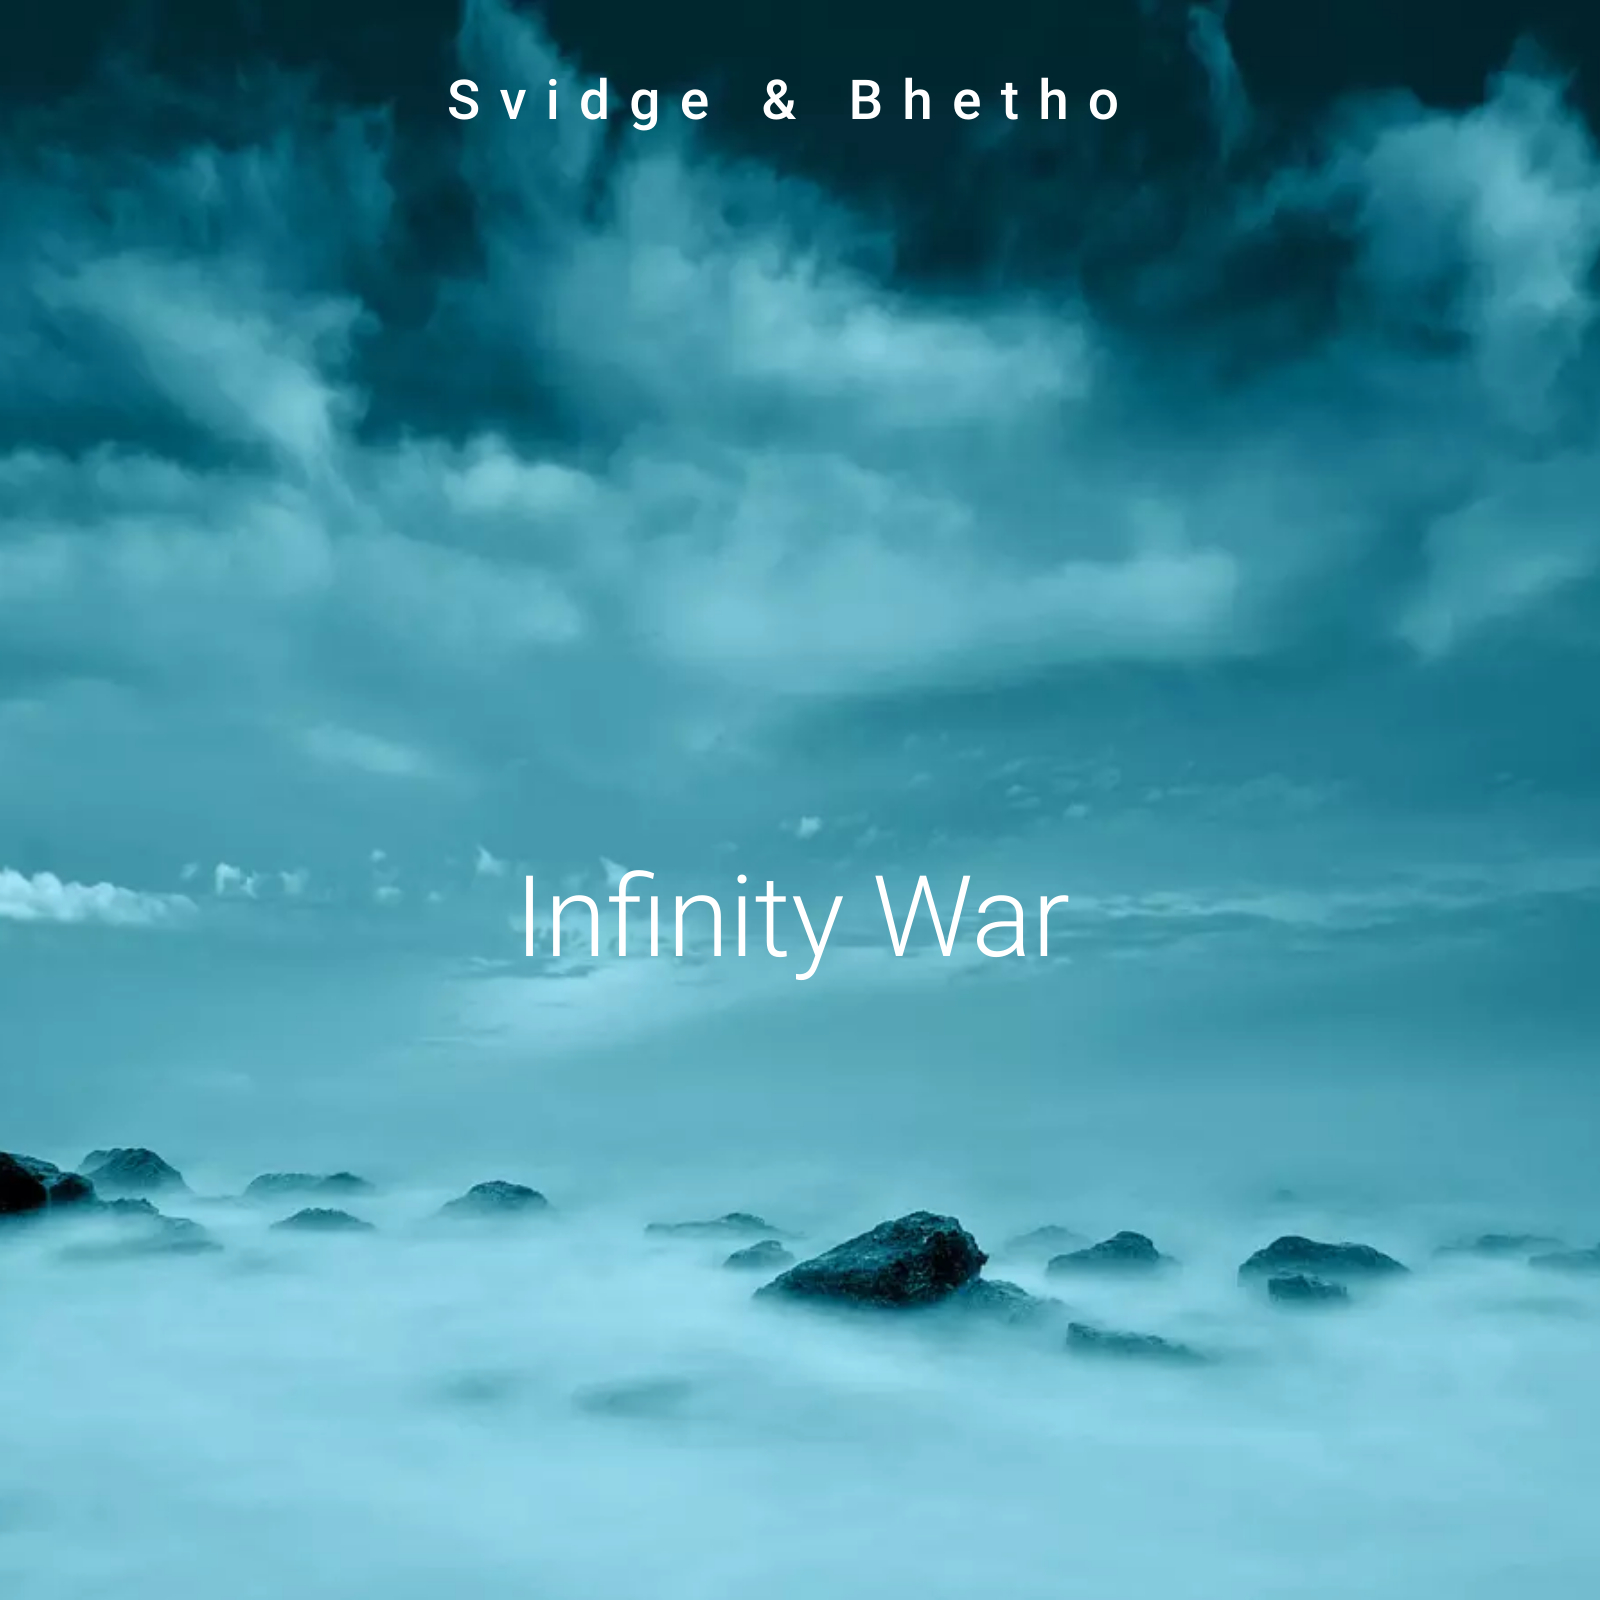 Infinity war - Svidge & Bhetho